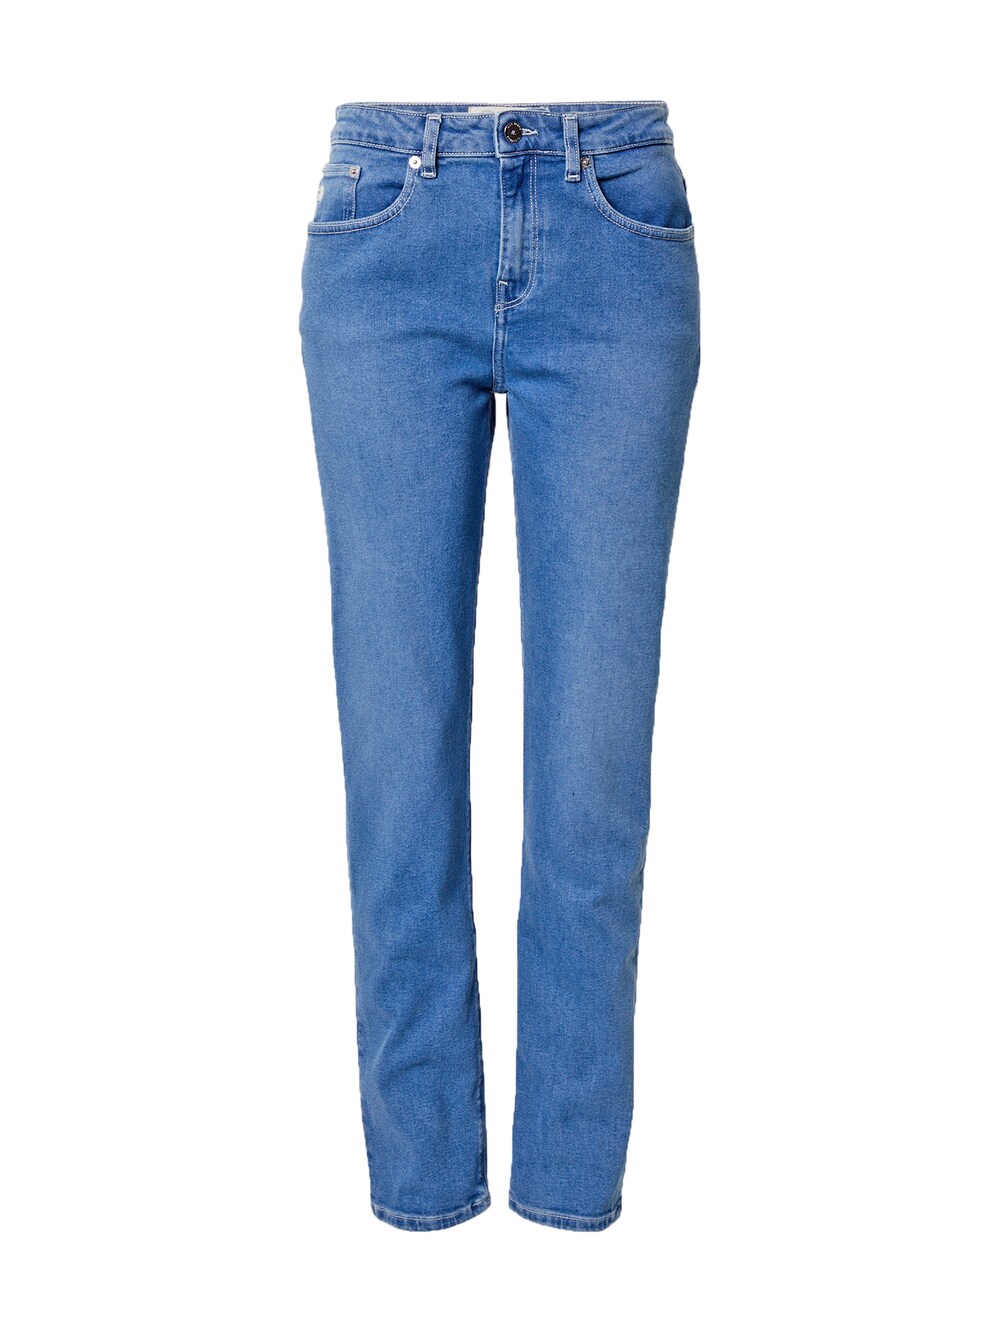 Обычные джинсы Mud Jeans Mimi, синий широкие джинсы mud jeans sara синий